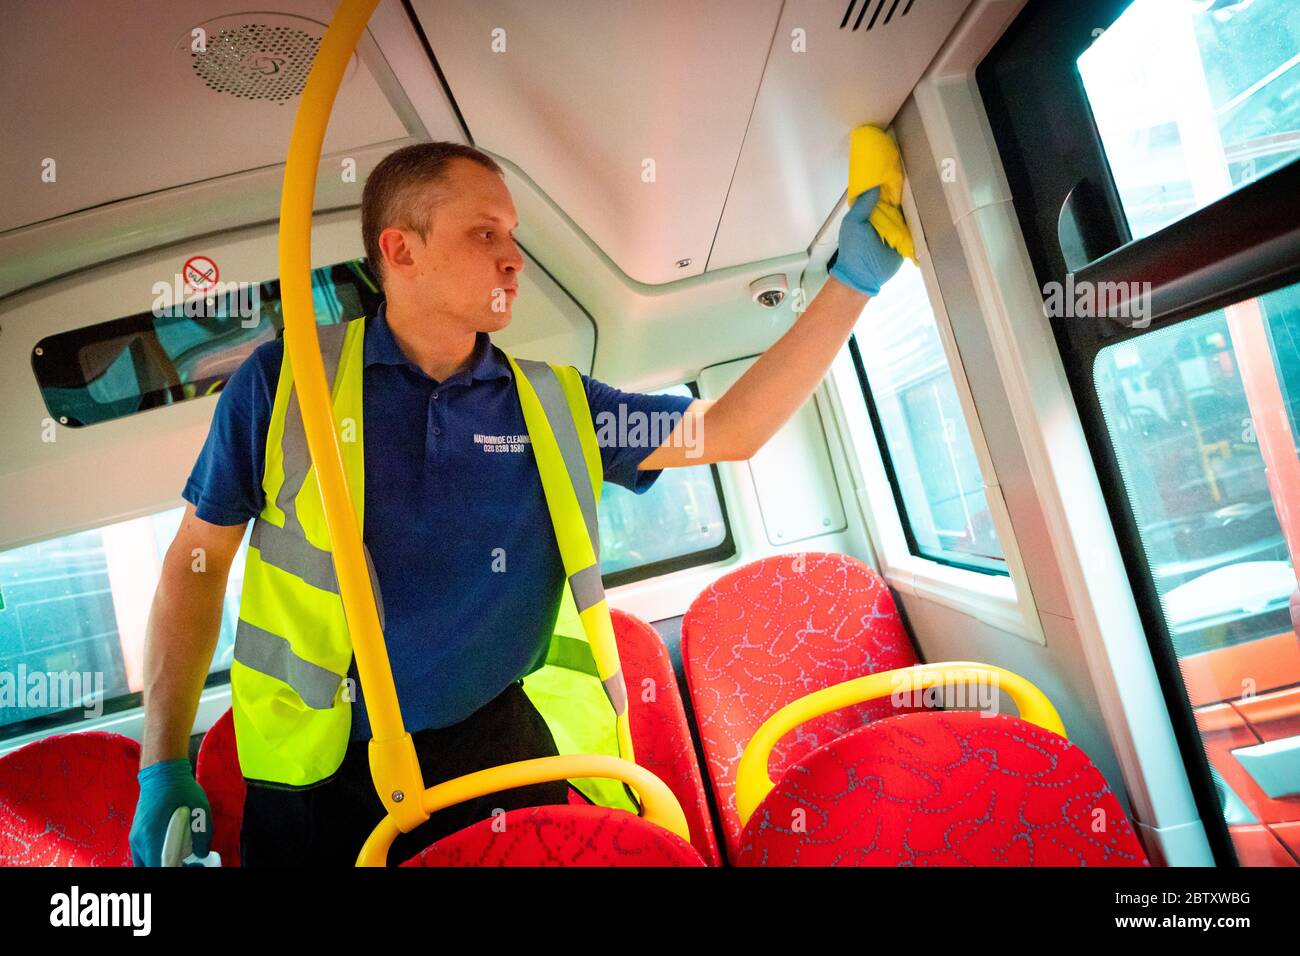 Un autobus est nettoyé quotidiennement par un agent nettoyant au garage Camberwell pendant l'épidémie de COVID-19. Londres, Royaume-Uni. Mai 2020. Banque D'Images